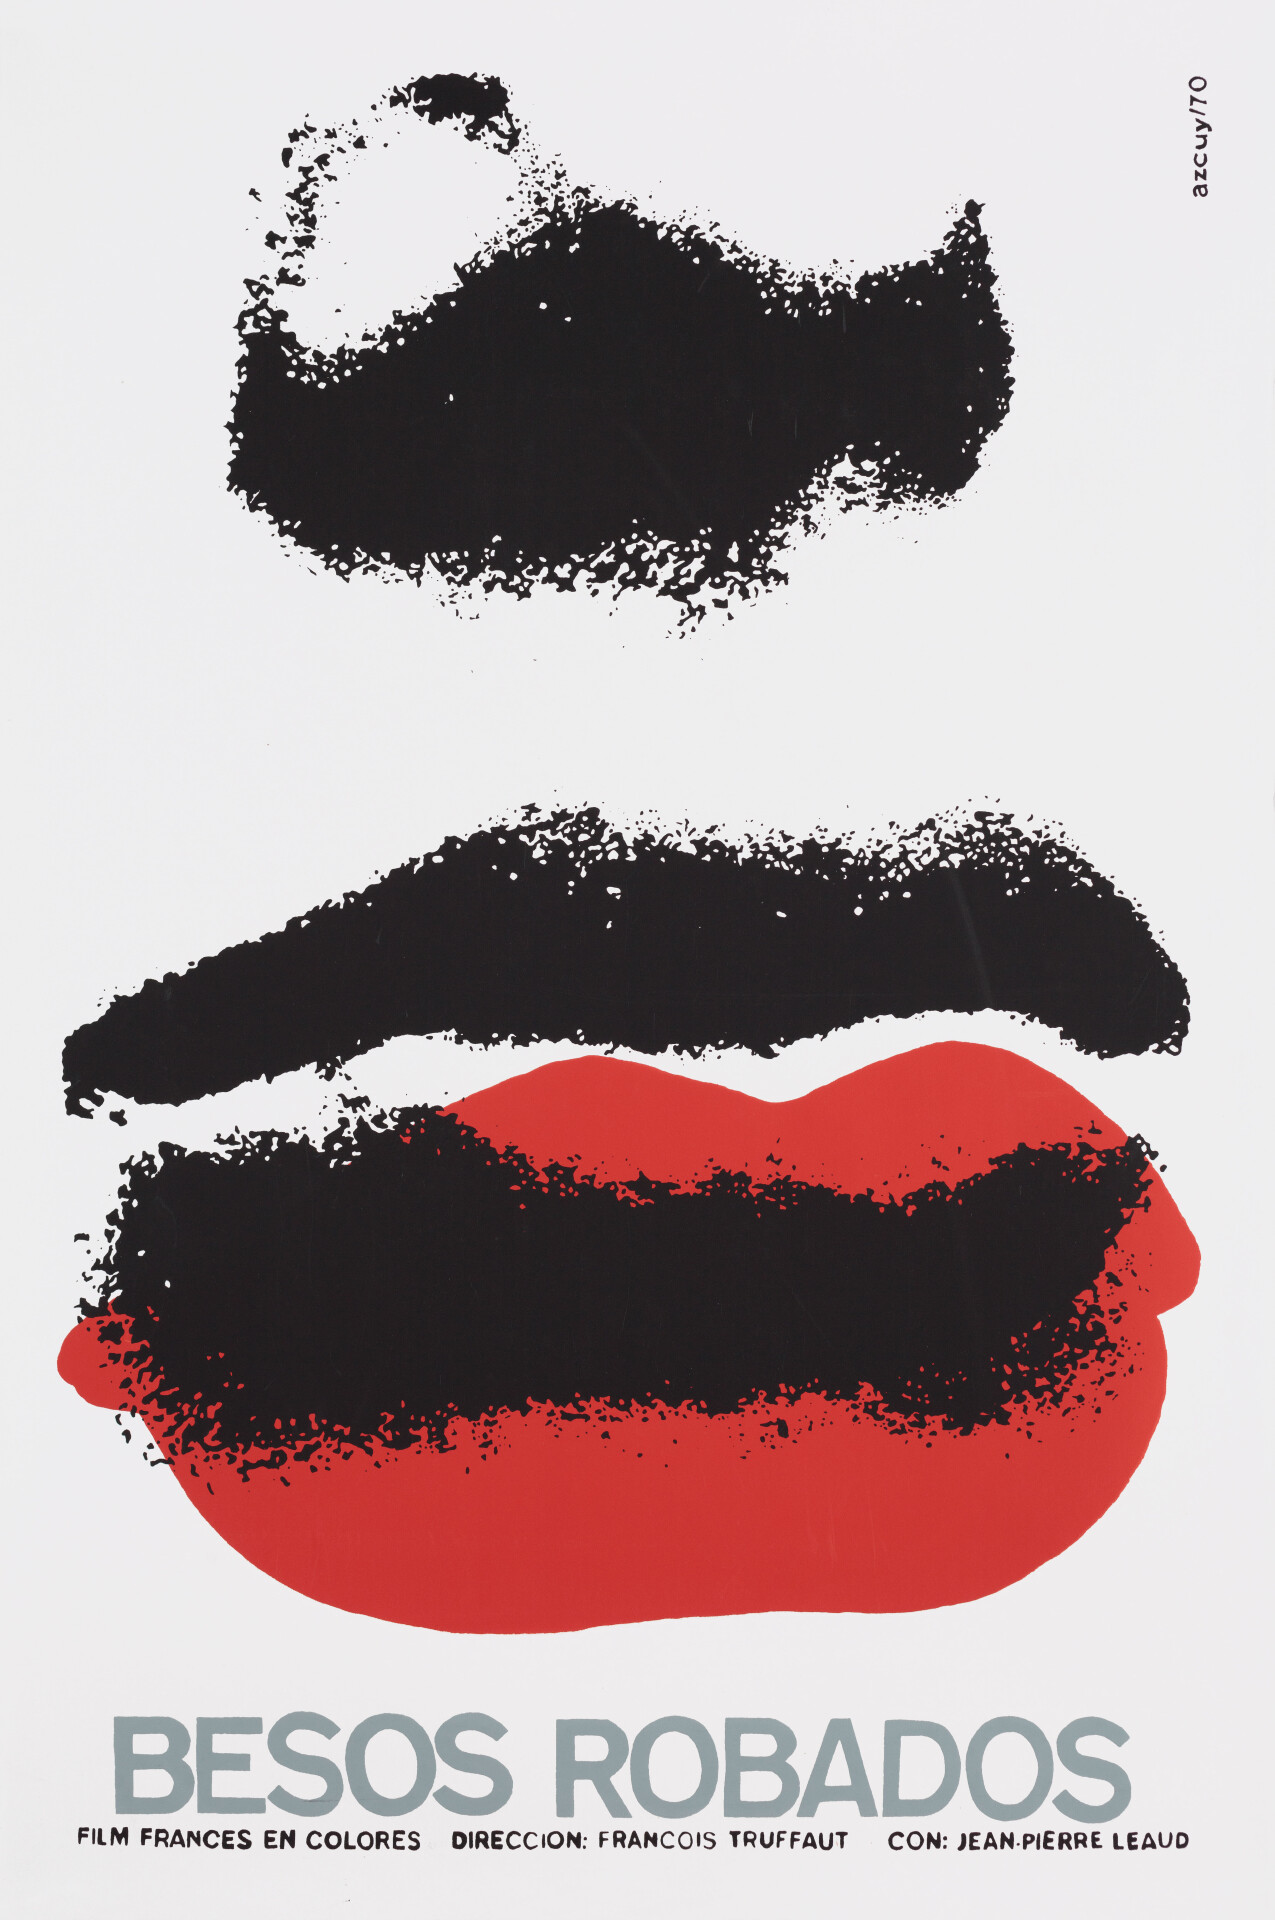 Украденные поцелуи (Stolen Kisses, 1968), режиссёр Франсуа Трюффо, кубинский постер к фильму, автор Рене Аскуи (графический дизайн, 1980 год)